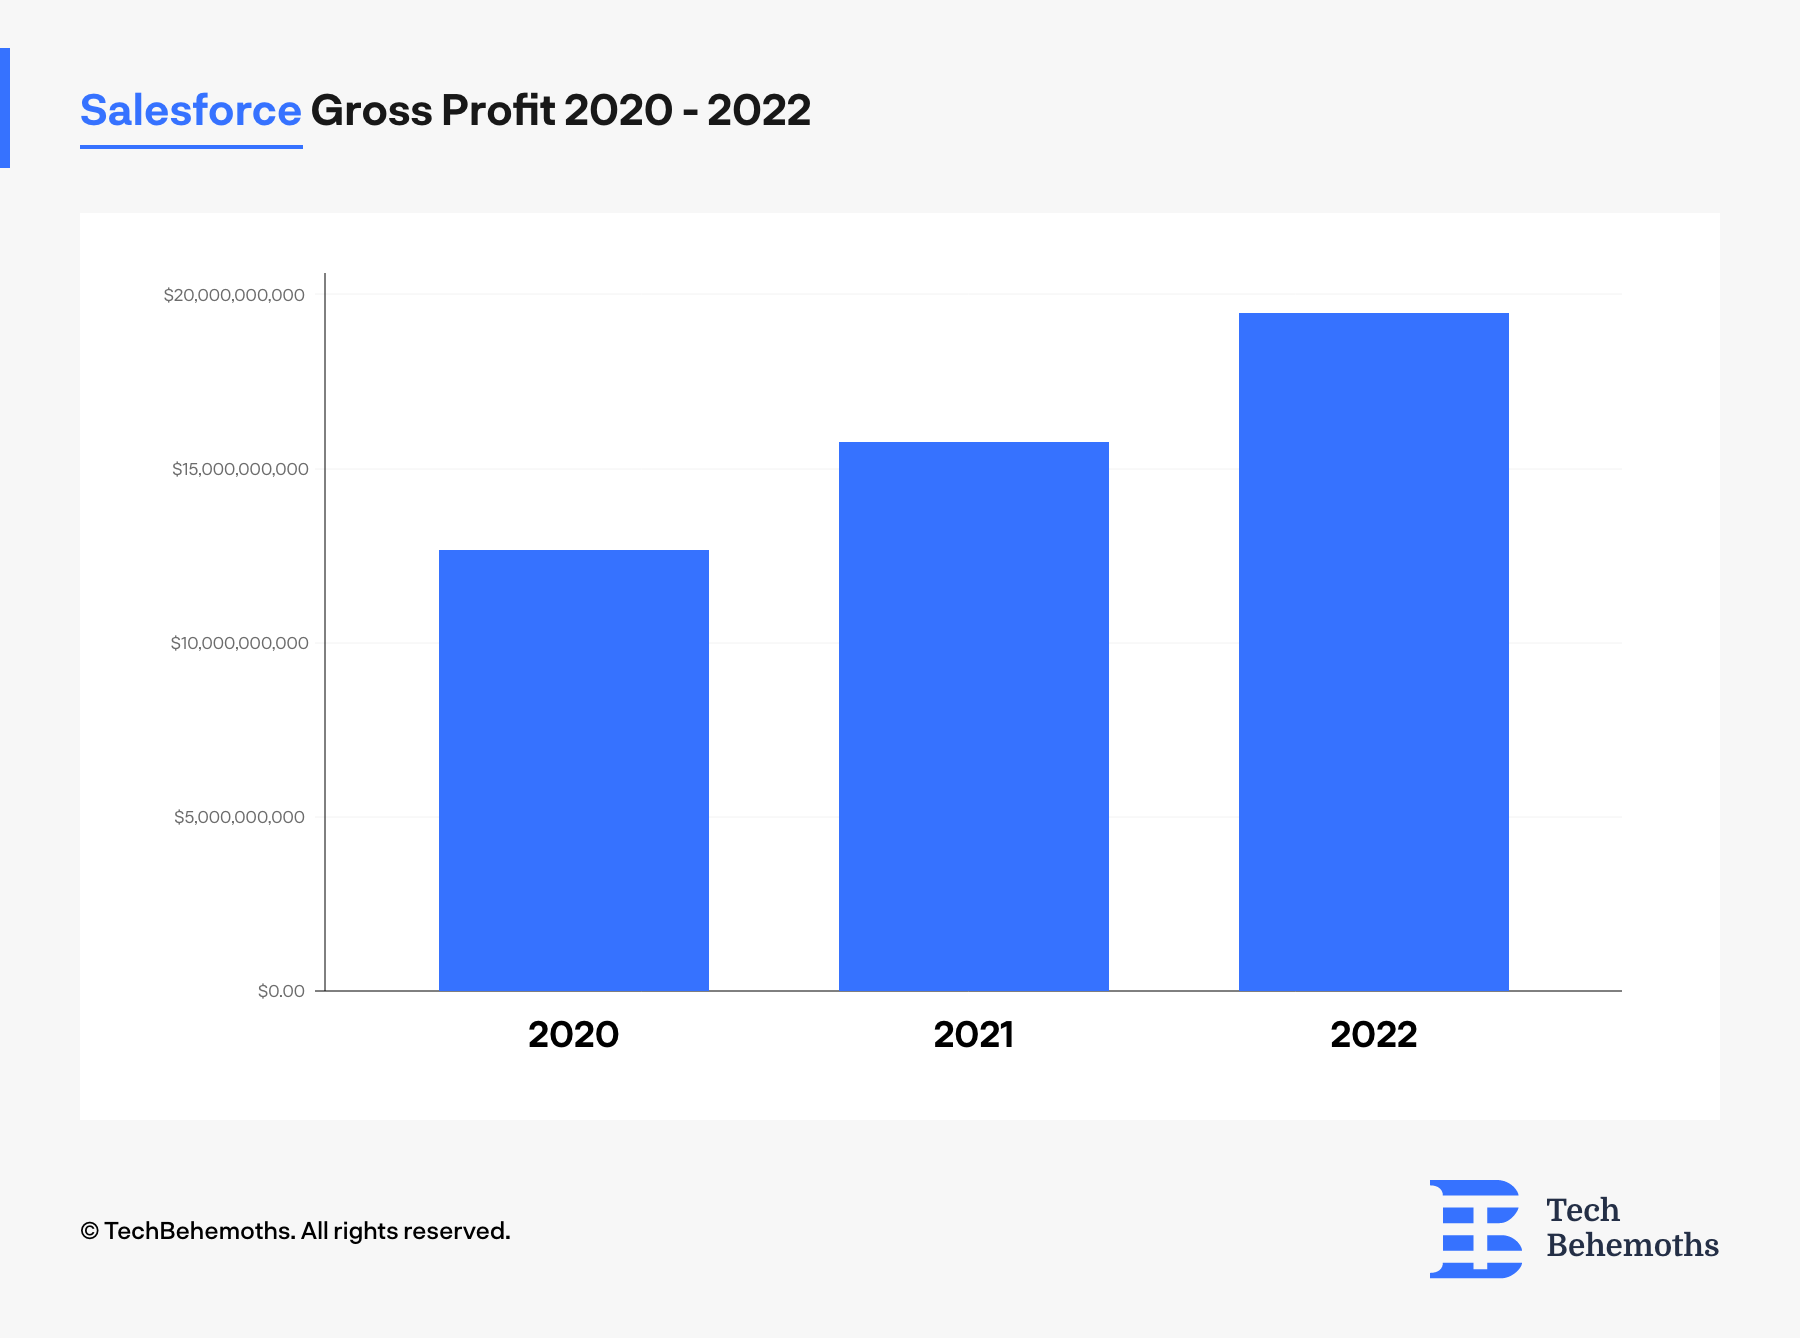 Salesforce Gross Profit between 2020-2022